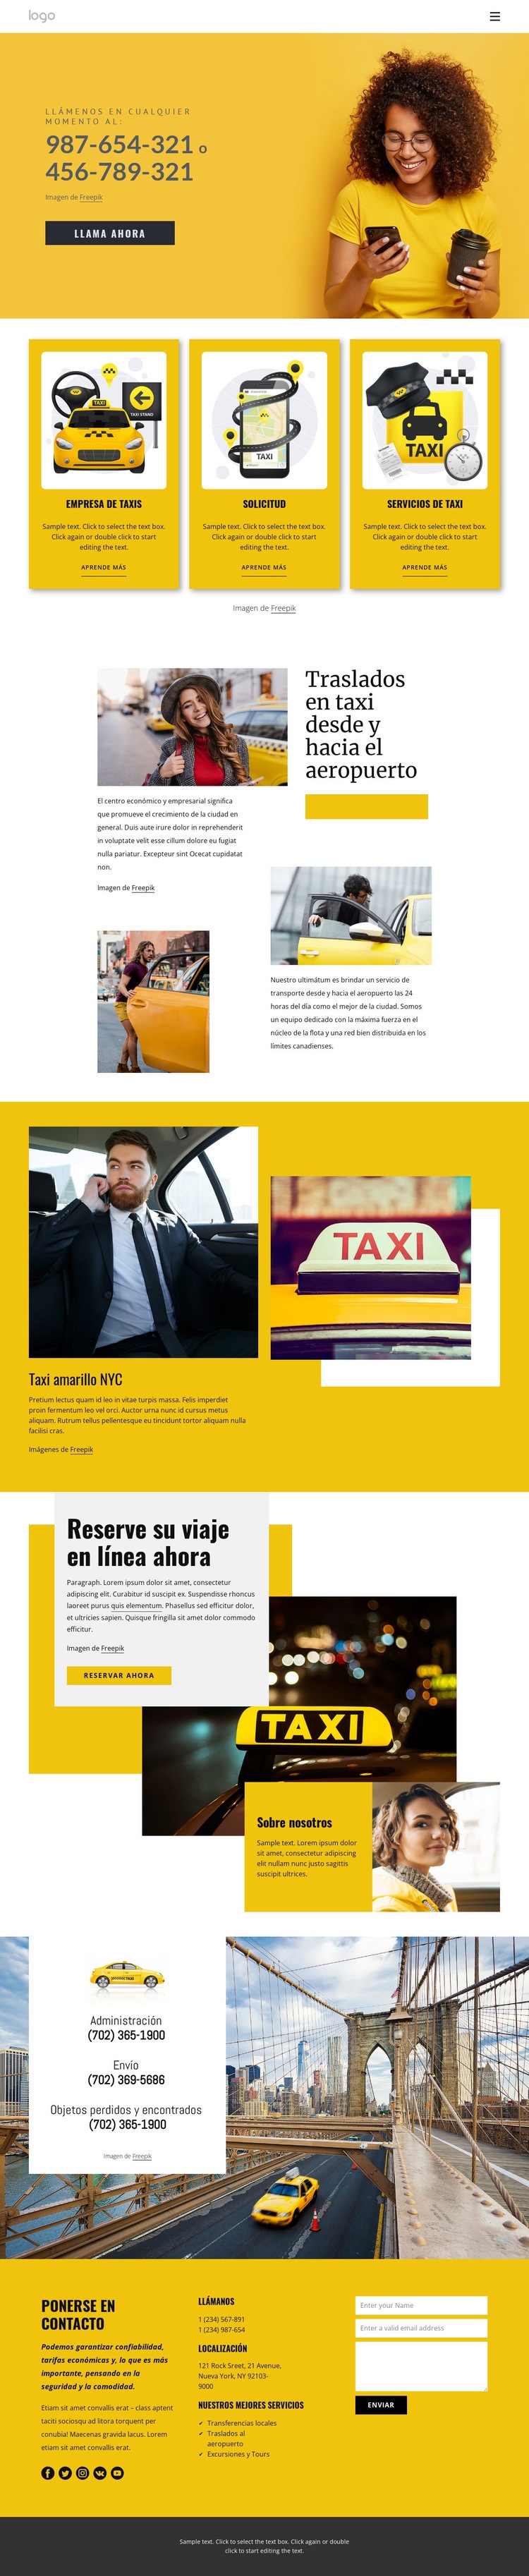 Servicio de taxi de calidad Maqueta de sitio web